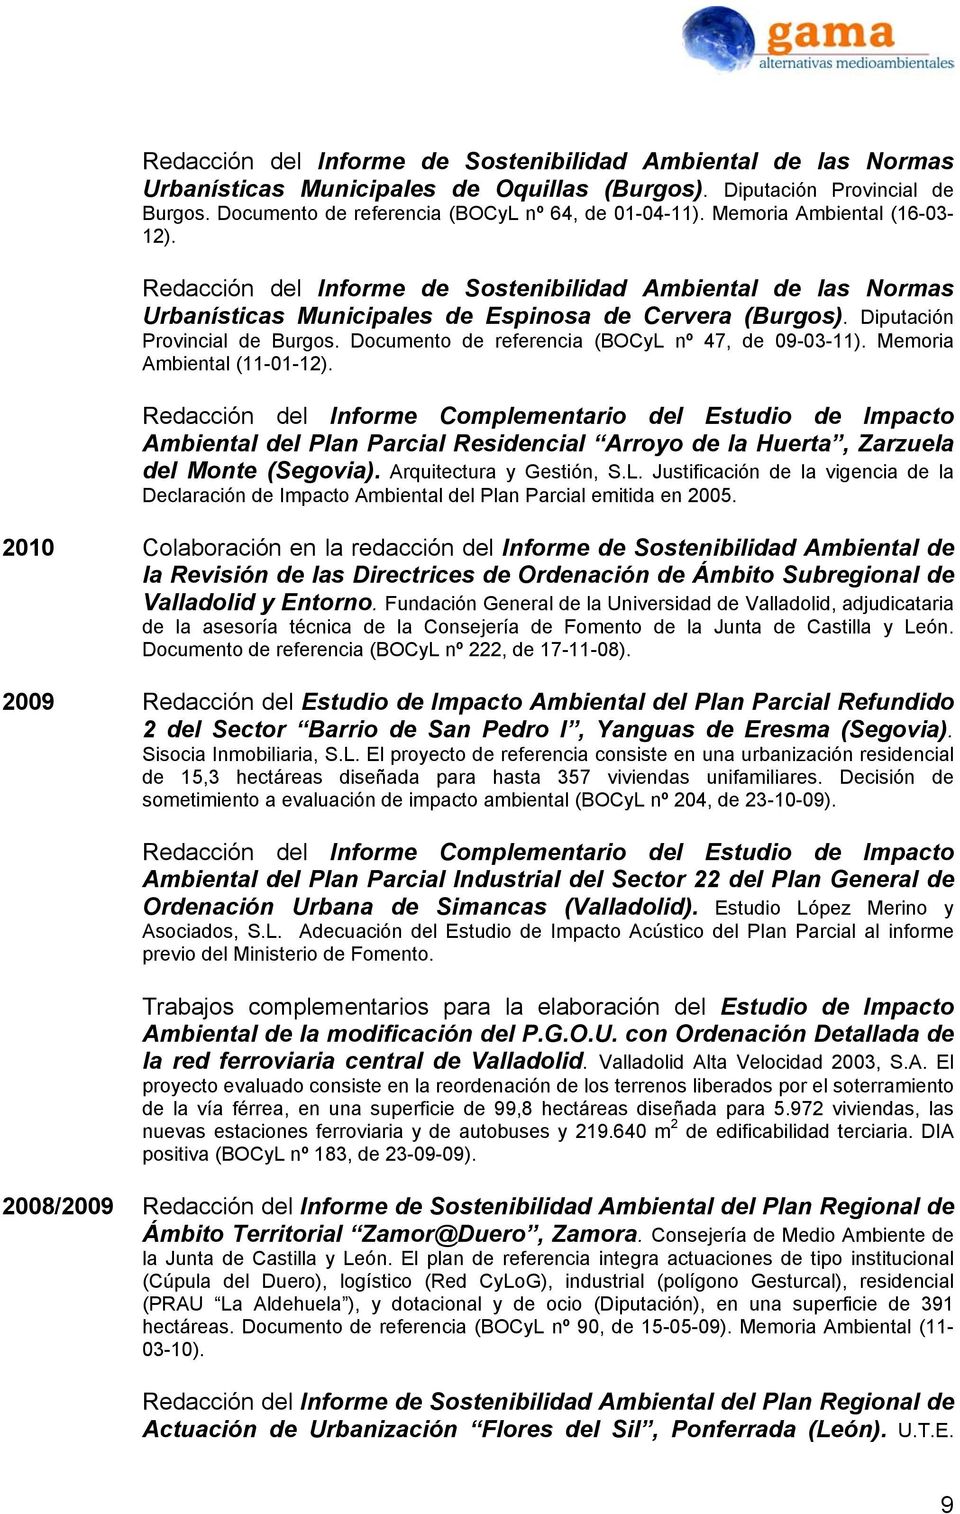 Documento de referencia (BOCyL nº 47, de 09-03-11). Memoria Ambiental (11-01-12).